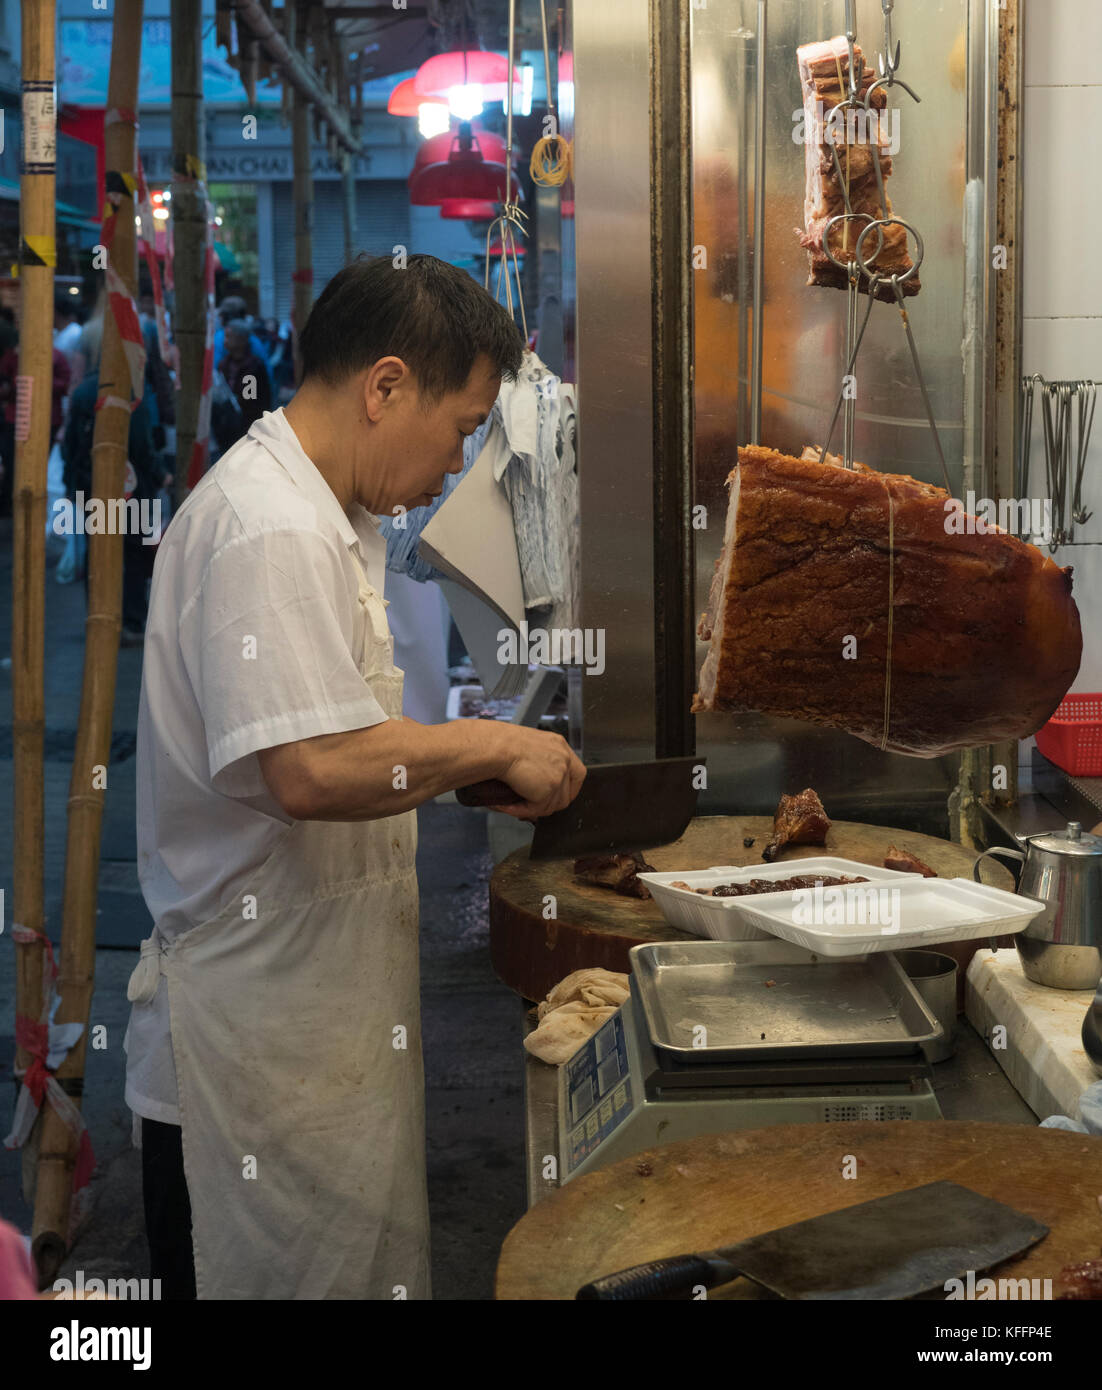 Les vendeurs du marché au marché intérieur Tei Yau marché alimentaire, à Hong Kong, Chine, Asie. Banque D'Images